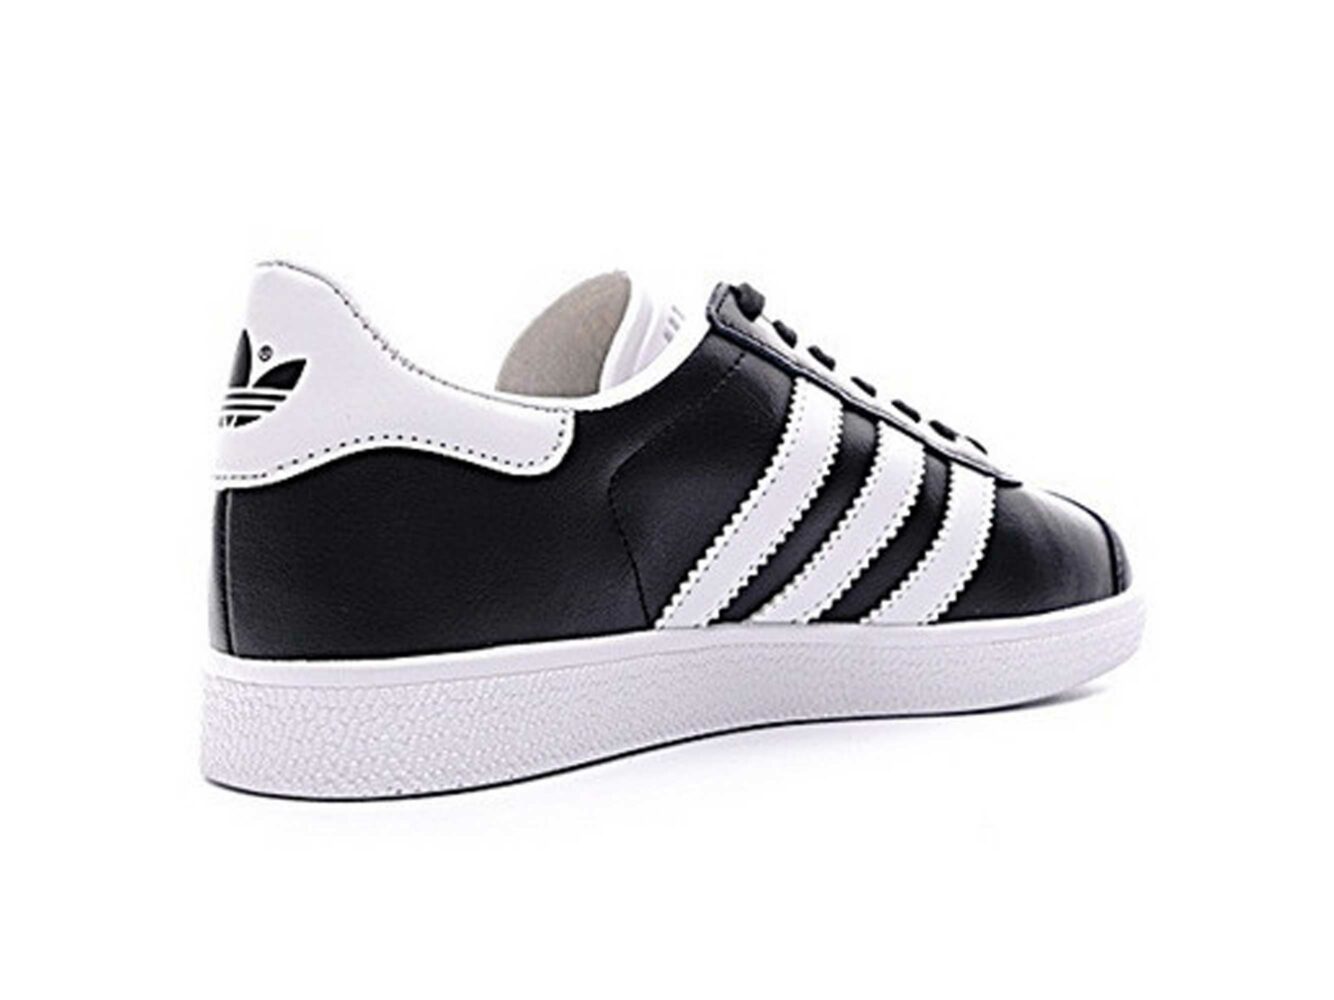 adidas gazelle leather black white купить